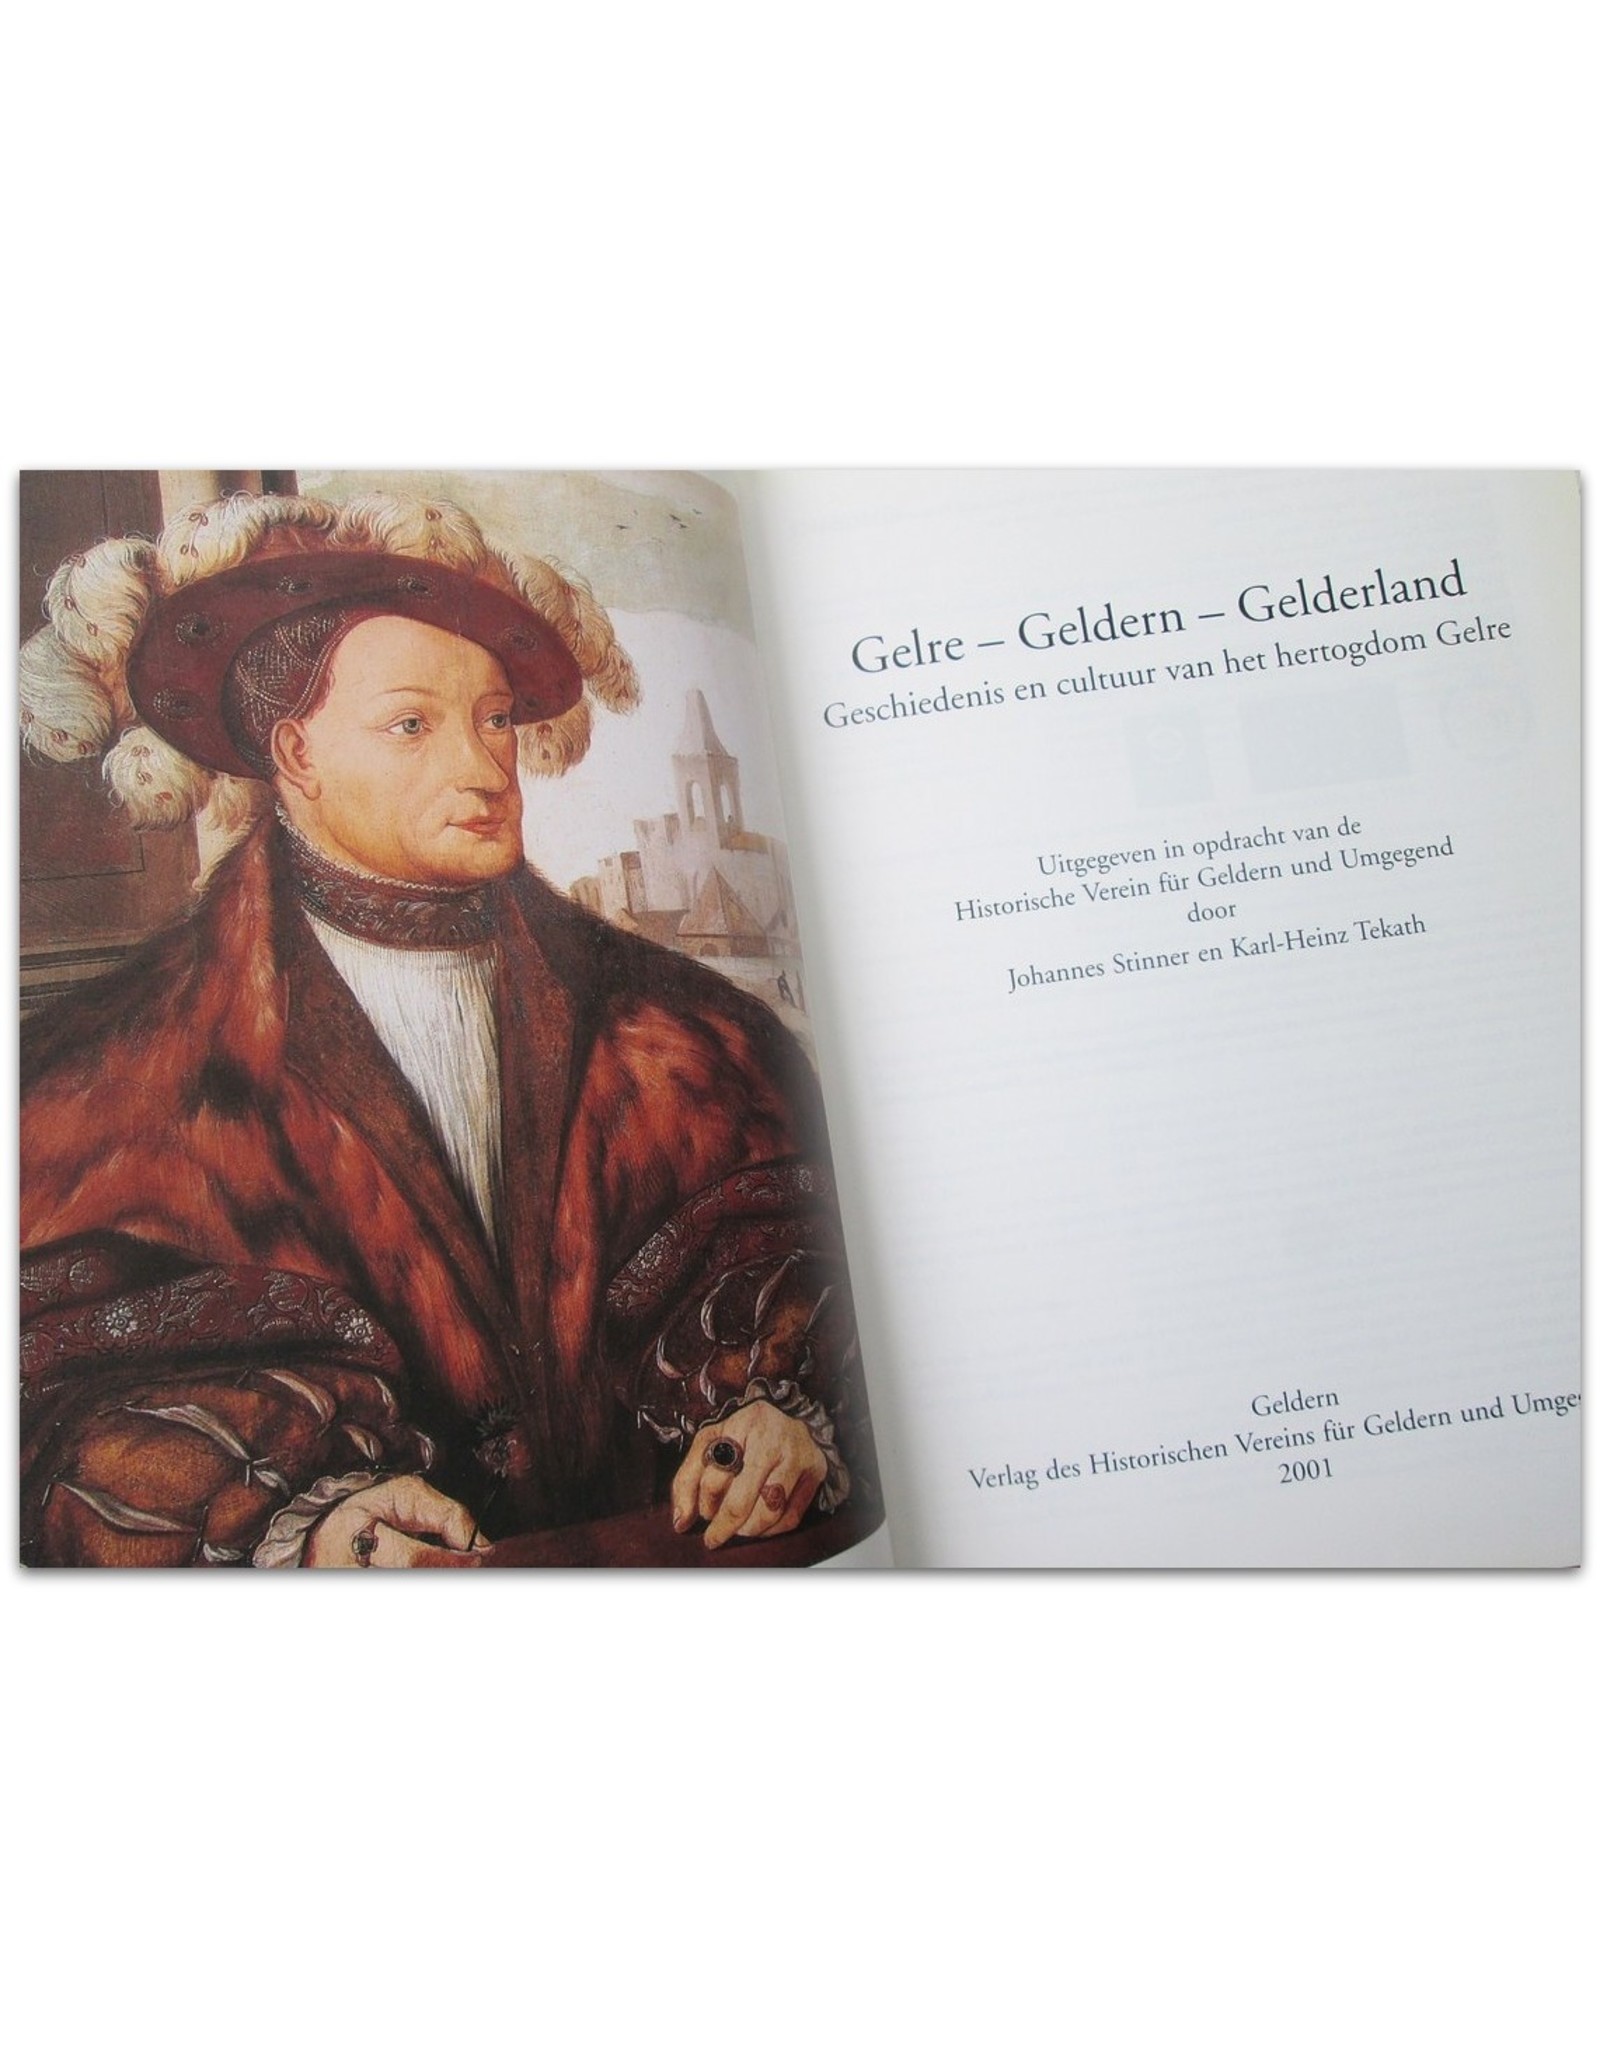 Johannes Stinner & Karl Heinz Tekath - Hertogdom Gelre [Deel 1 & 2]: Historische bijdragen [Gelre-Geldern-Gelderland] / Catalogus [De Gouden Eeuw van Gelre]